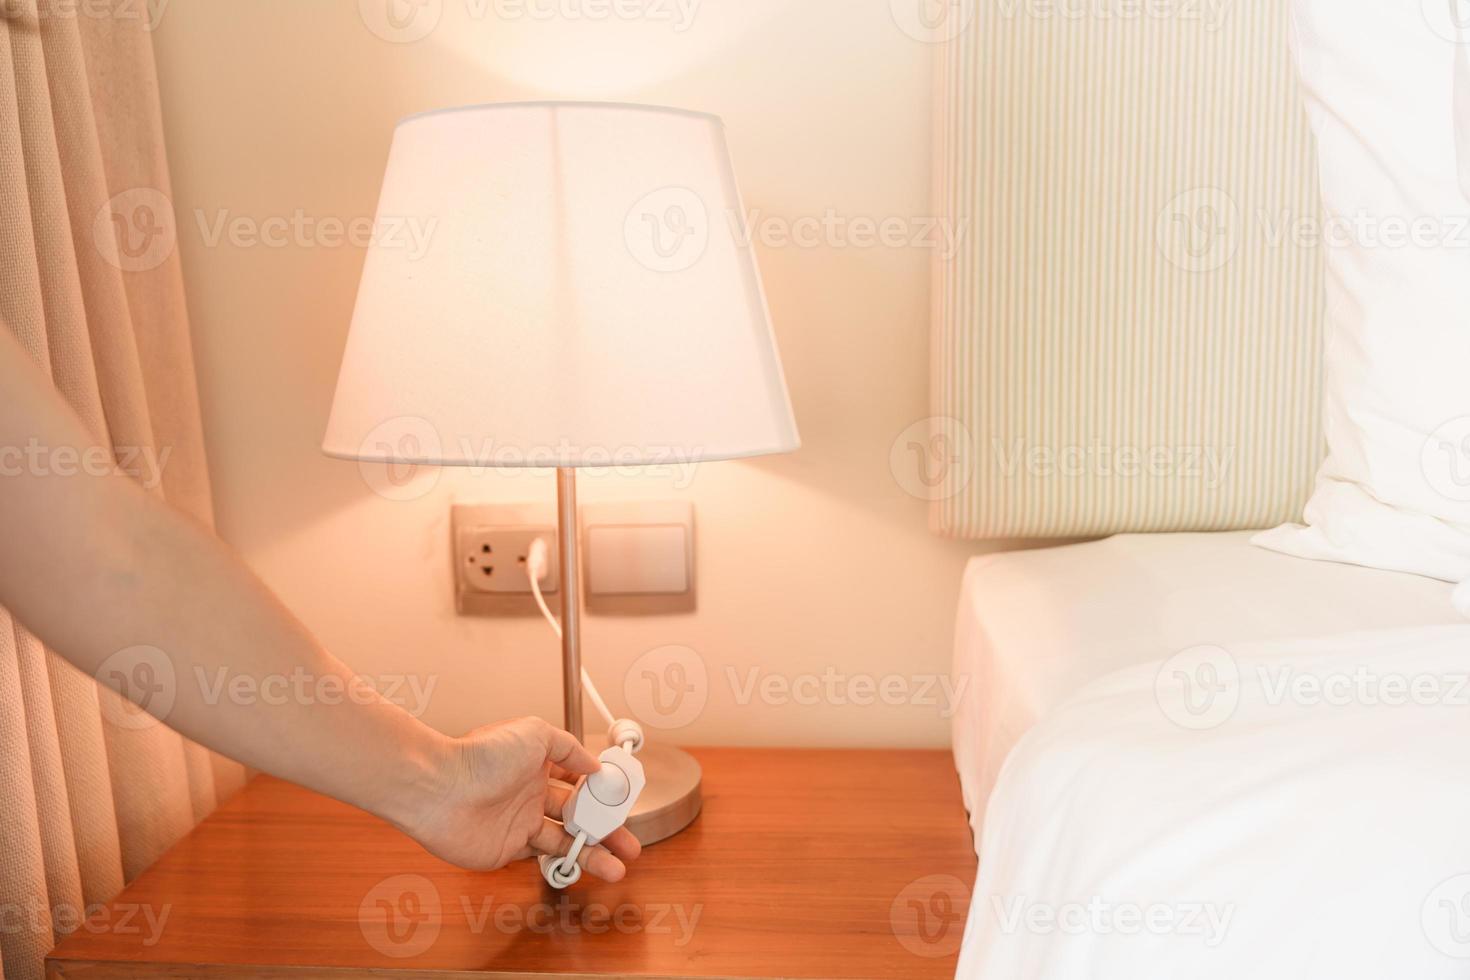 vrouw hand- draaien Aan of draaien uit schakelaar de minimaal lamp in modern slaapkamer. appartement leven concept foto